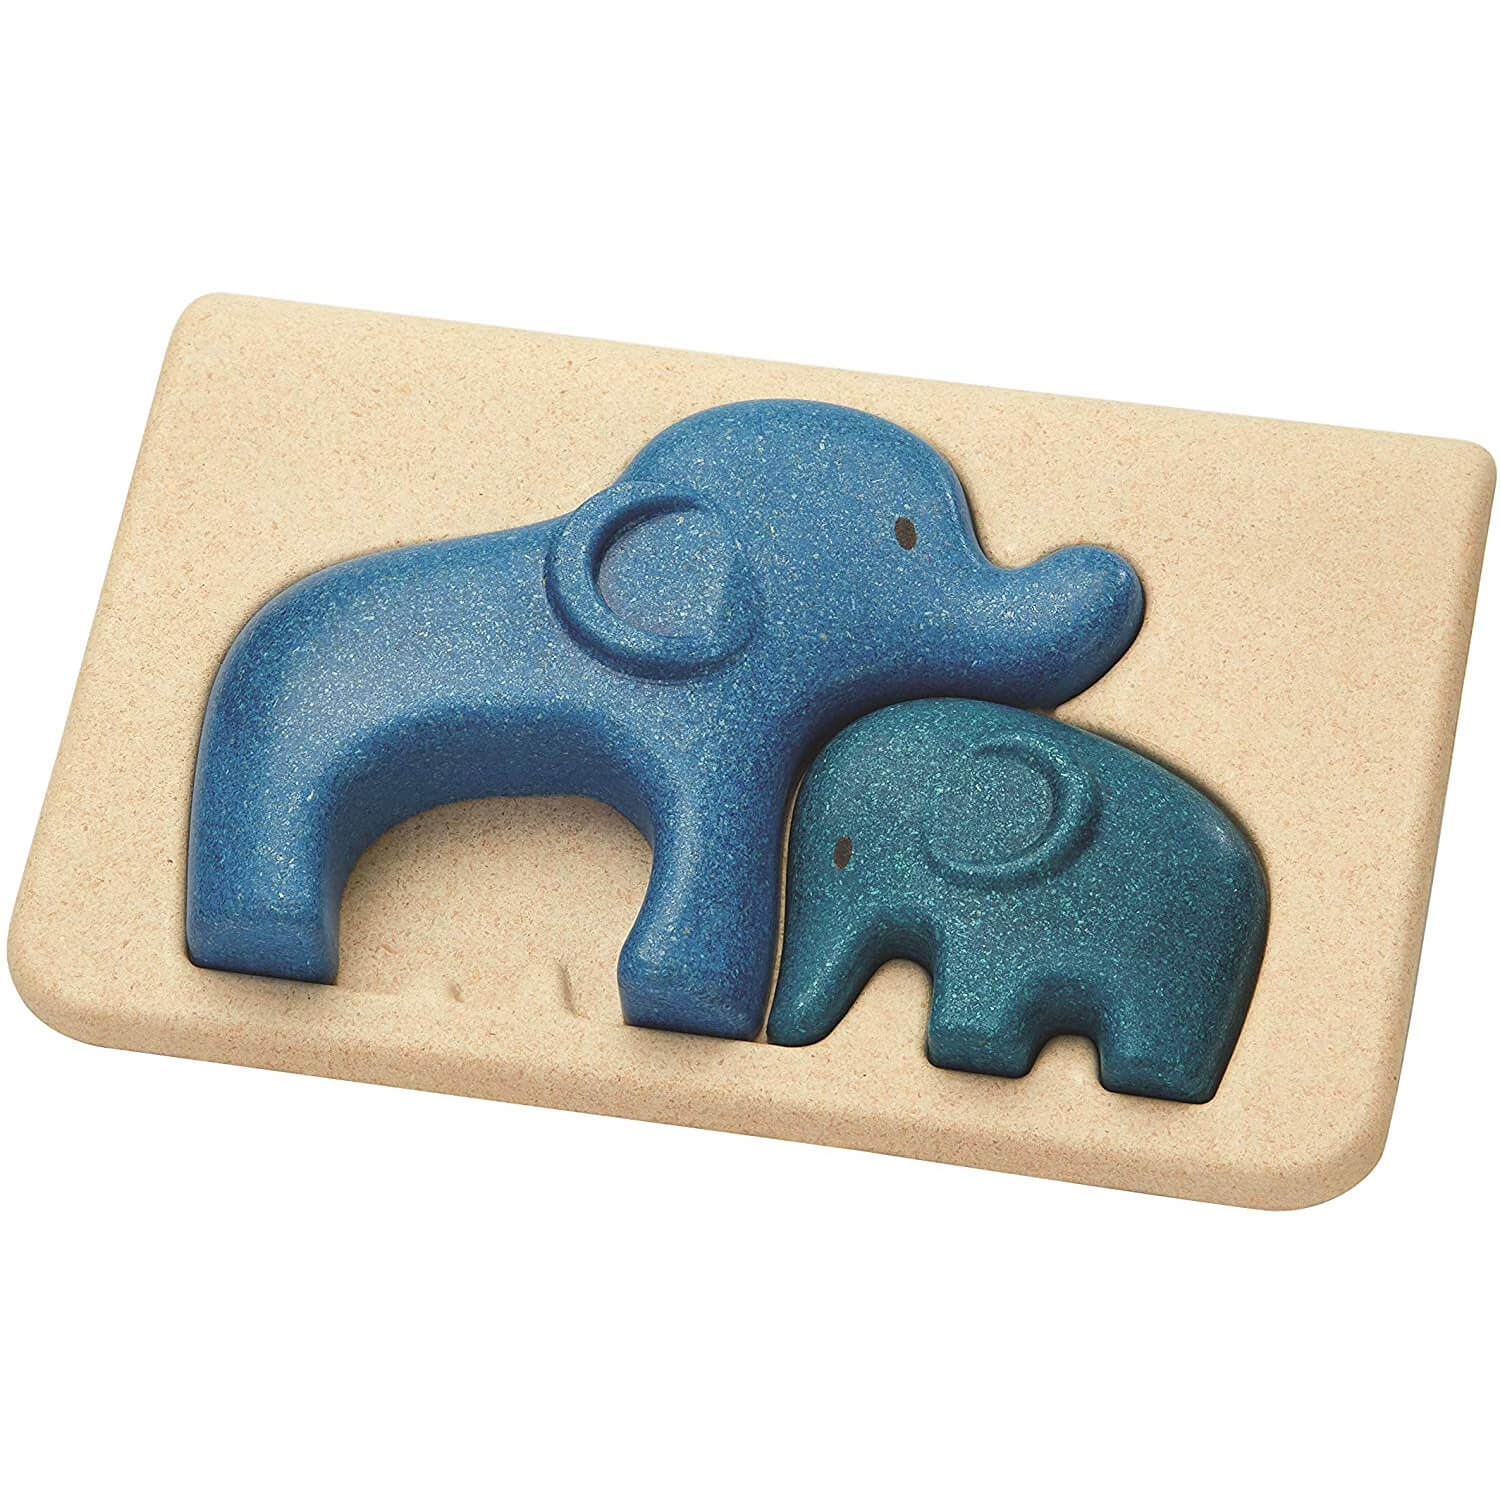 Snoring elephant. Пазл PLANTOYS слоники (4635). Деревянные пазлы для малышей со слоном. Головоломка Слоник. Деревянные игрушки для детей слон.